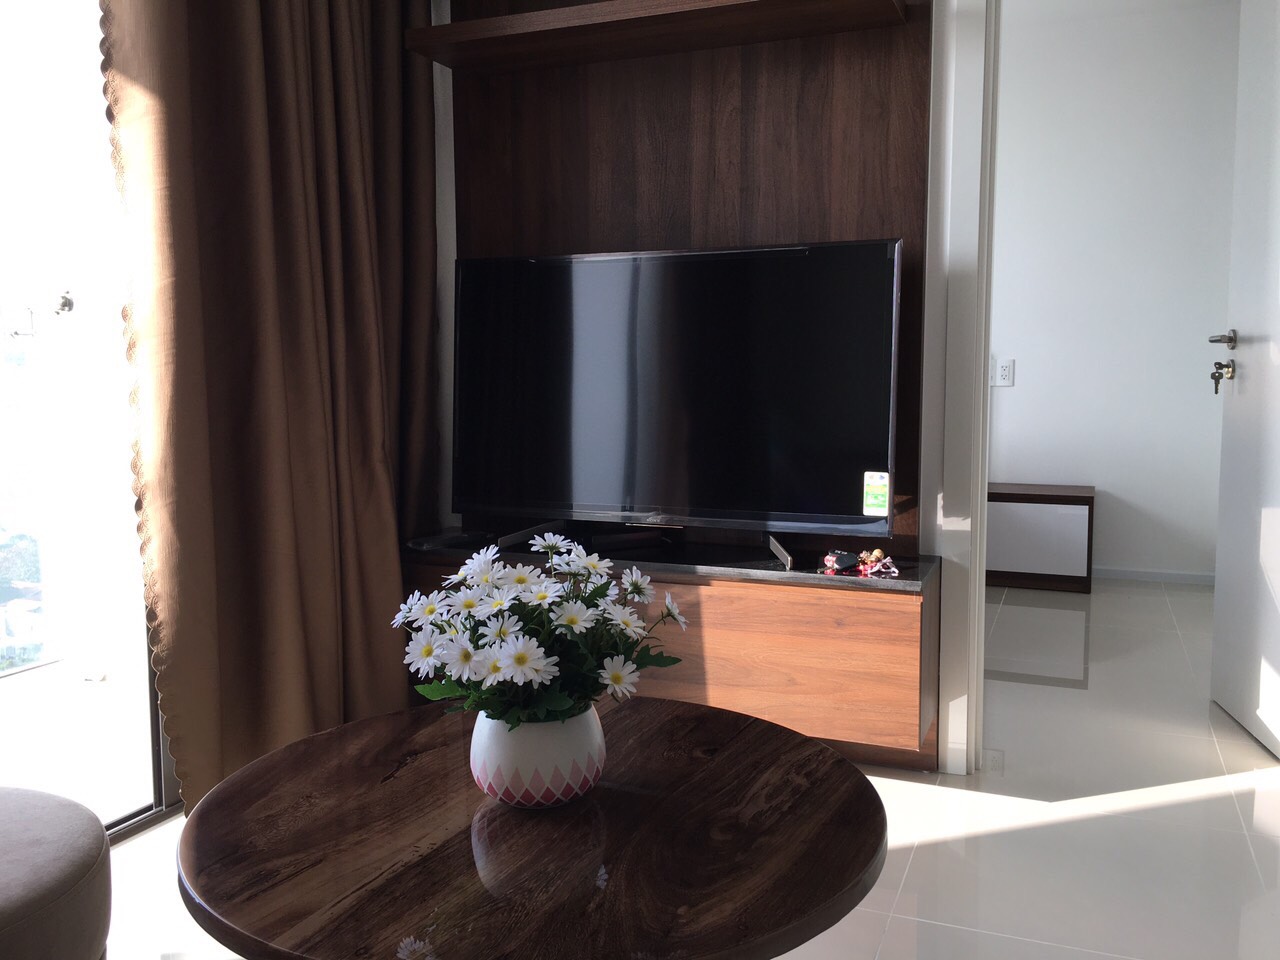 Cho thuê nhiều căn hộ Hiyori chính chủ,full nội thất sang trọng,New 100% giá rẻ nhất TT.0983.750.220